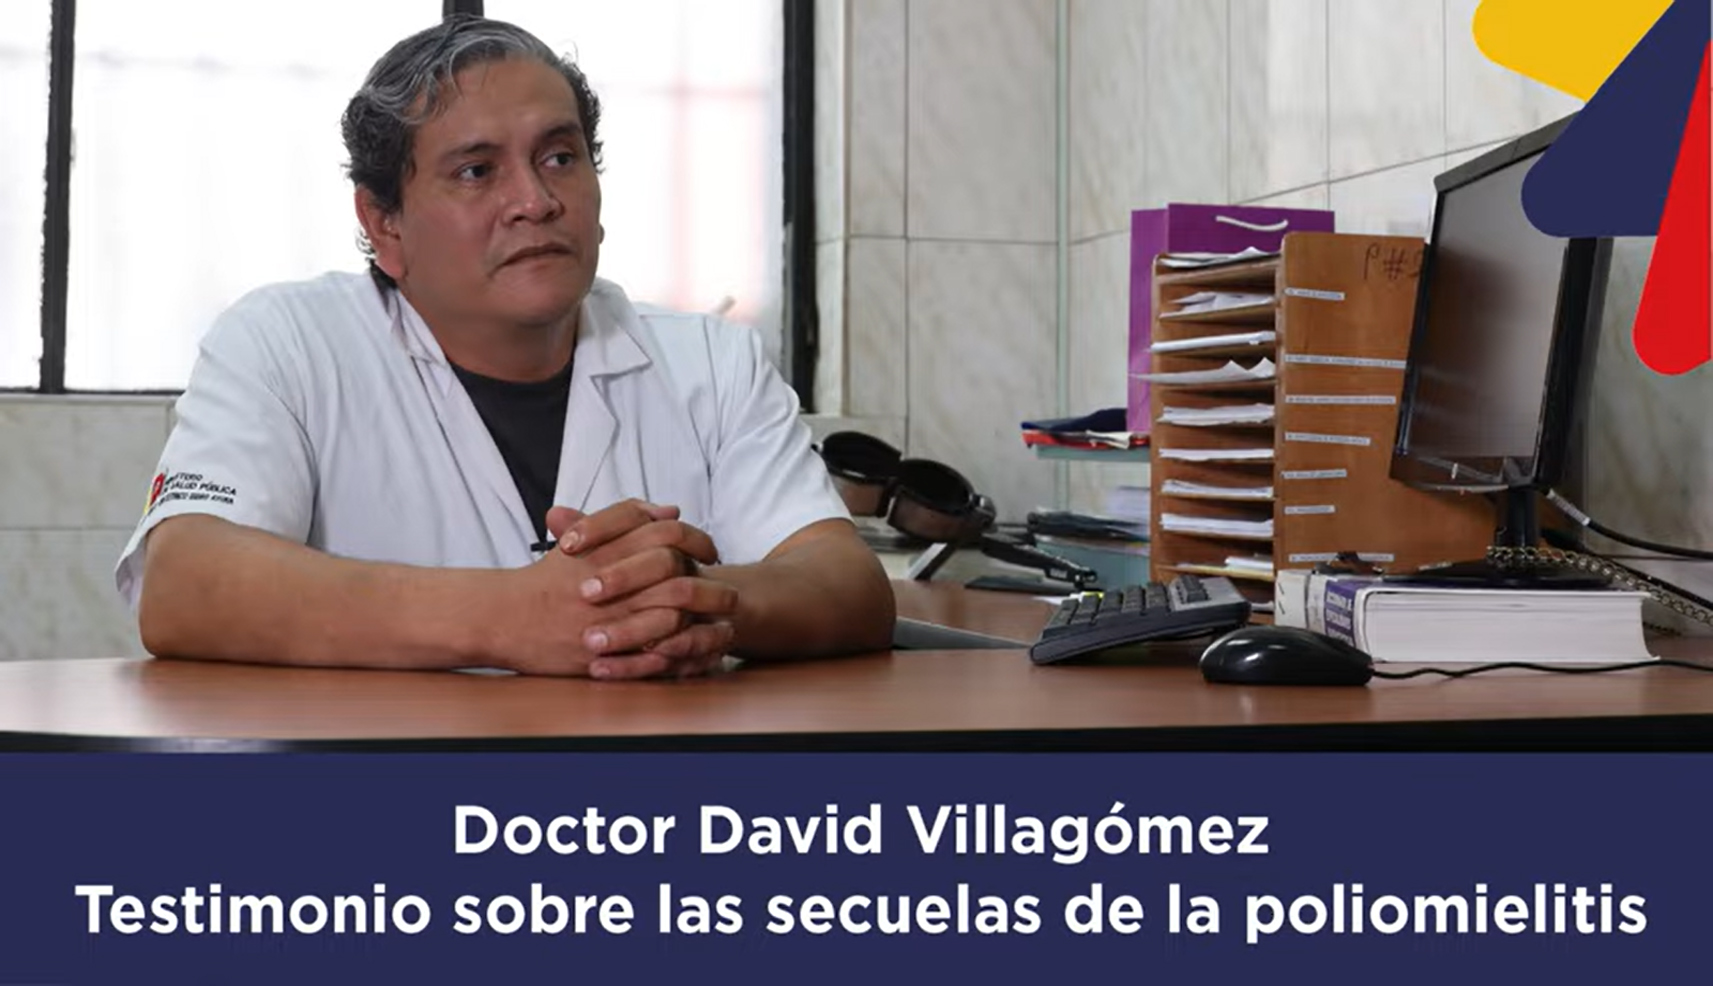 David Villagómez - Testimonio sobre las secuelas de la poliomielitis